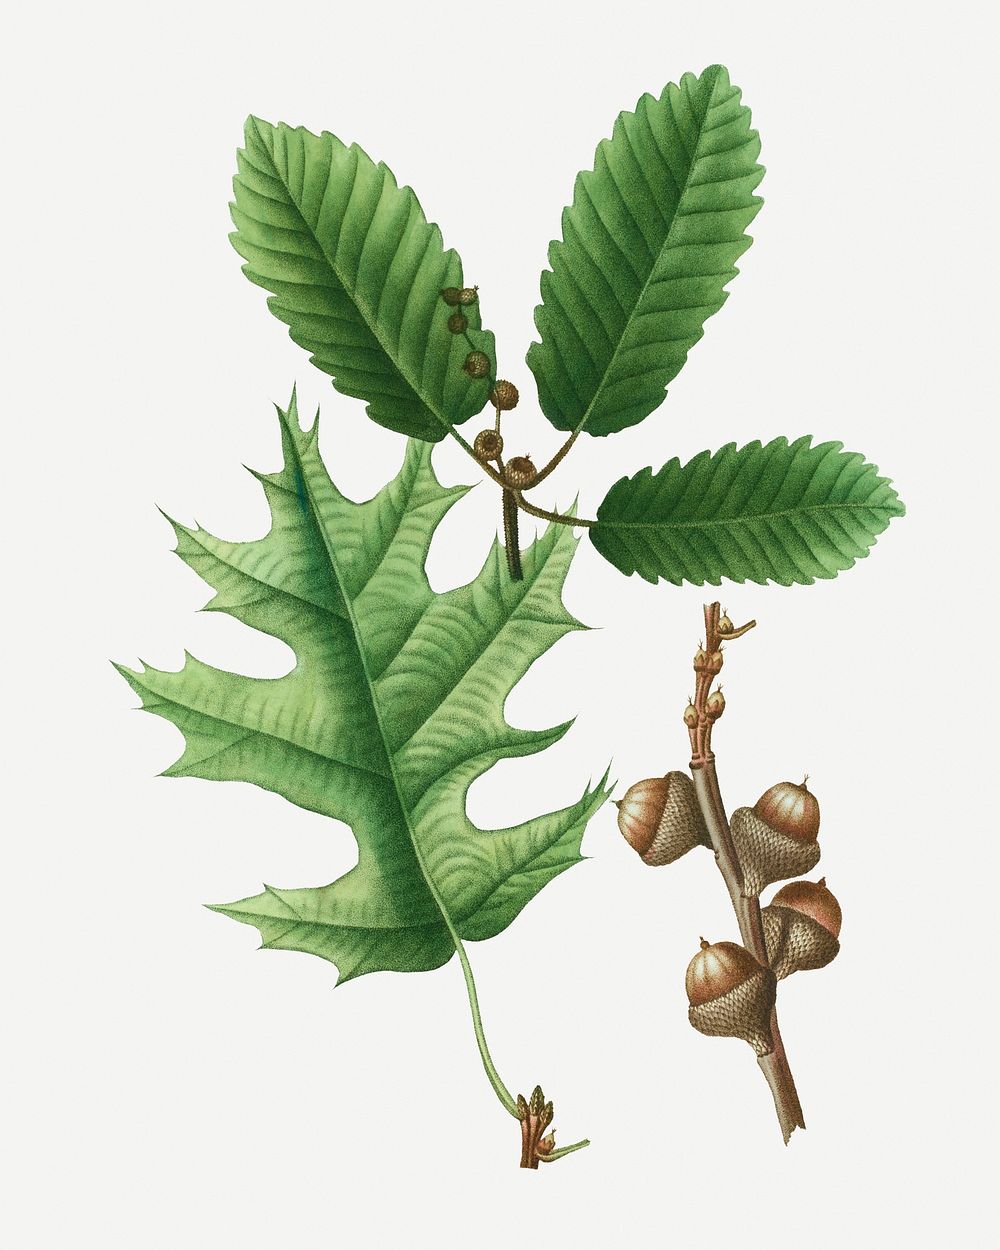 Eastern black oak and chestnut oak illustration